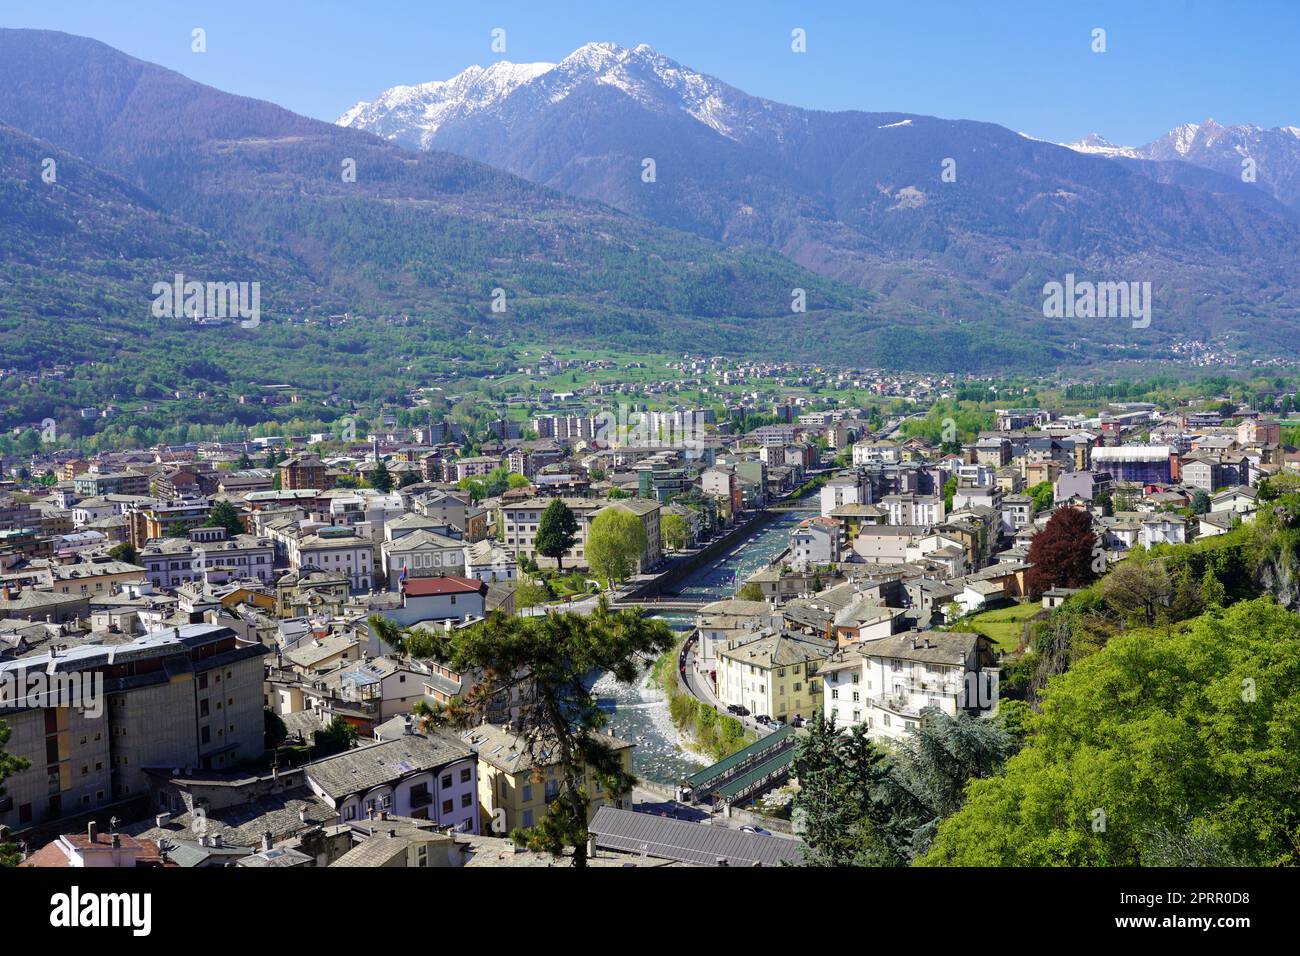 Vue aérienne de la ville de Sondrio dans la vallée de Valtellina, en Lombardie, Italie Banque D'Images